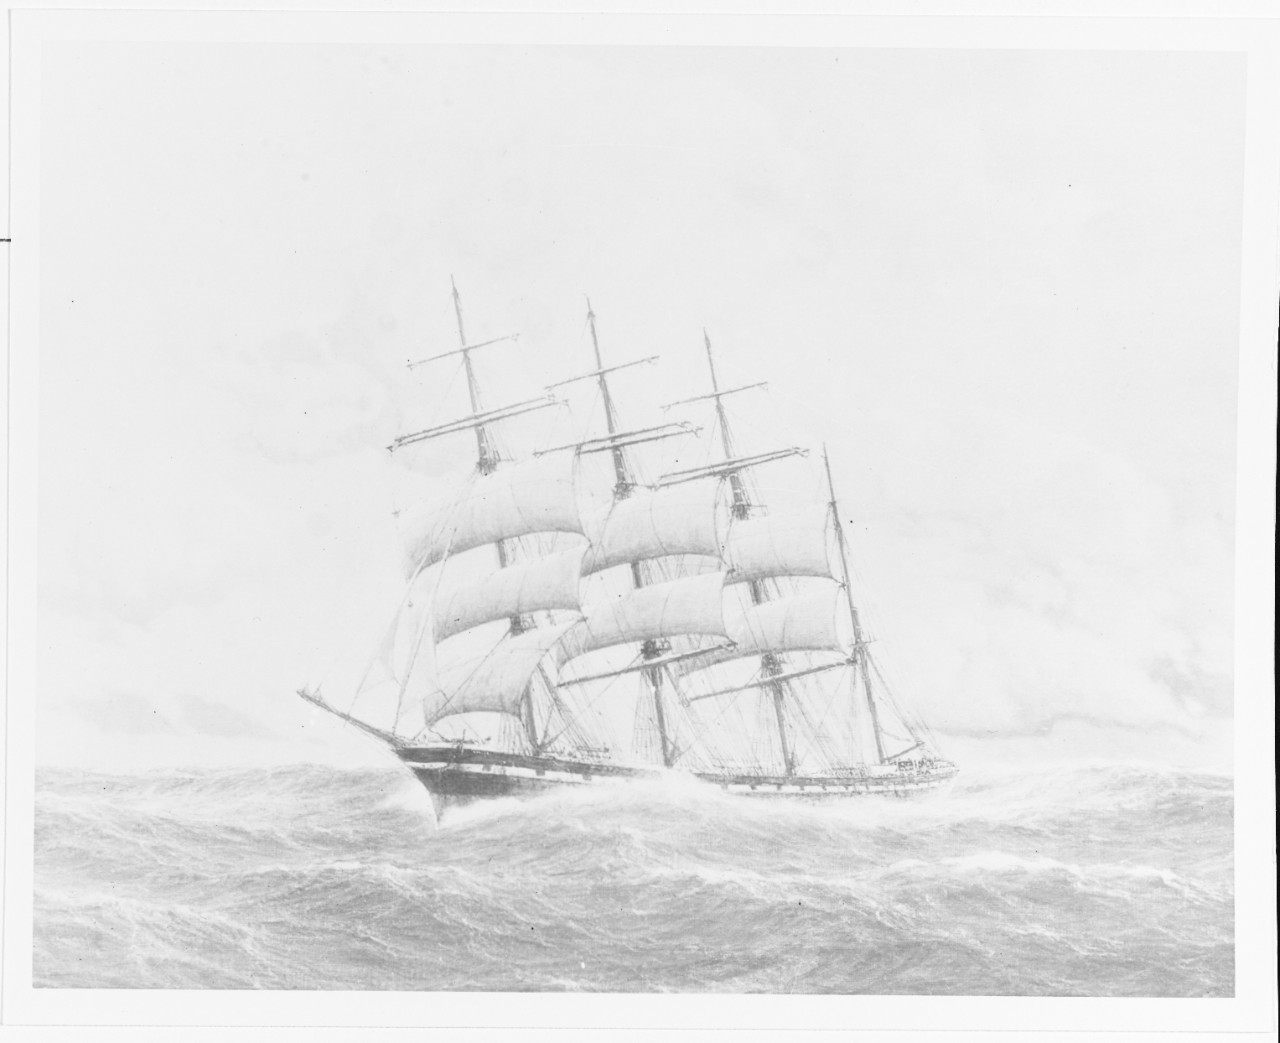 "A Ship [4-masted barque] at Sea"